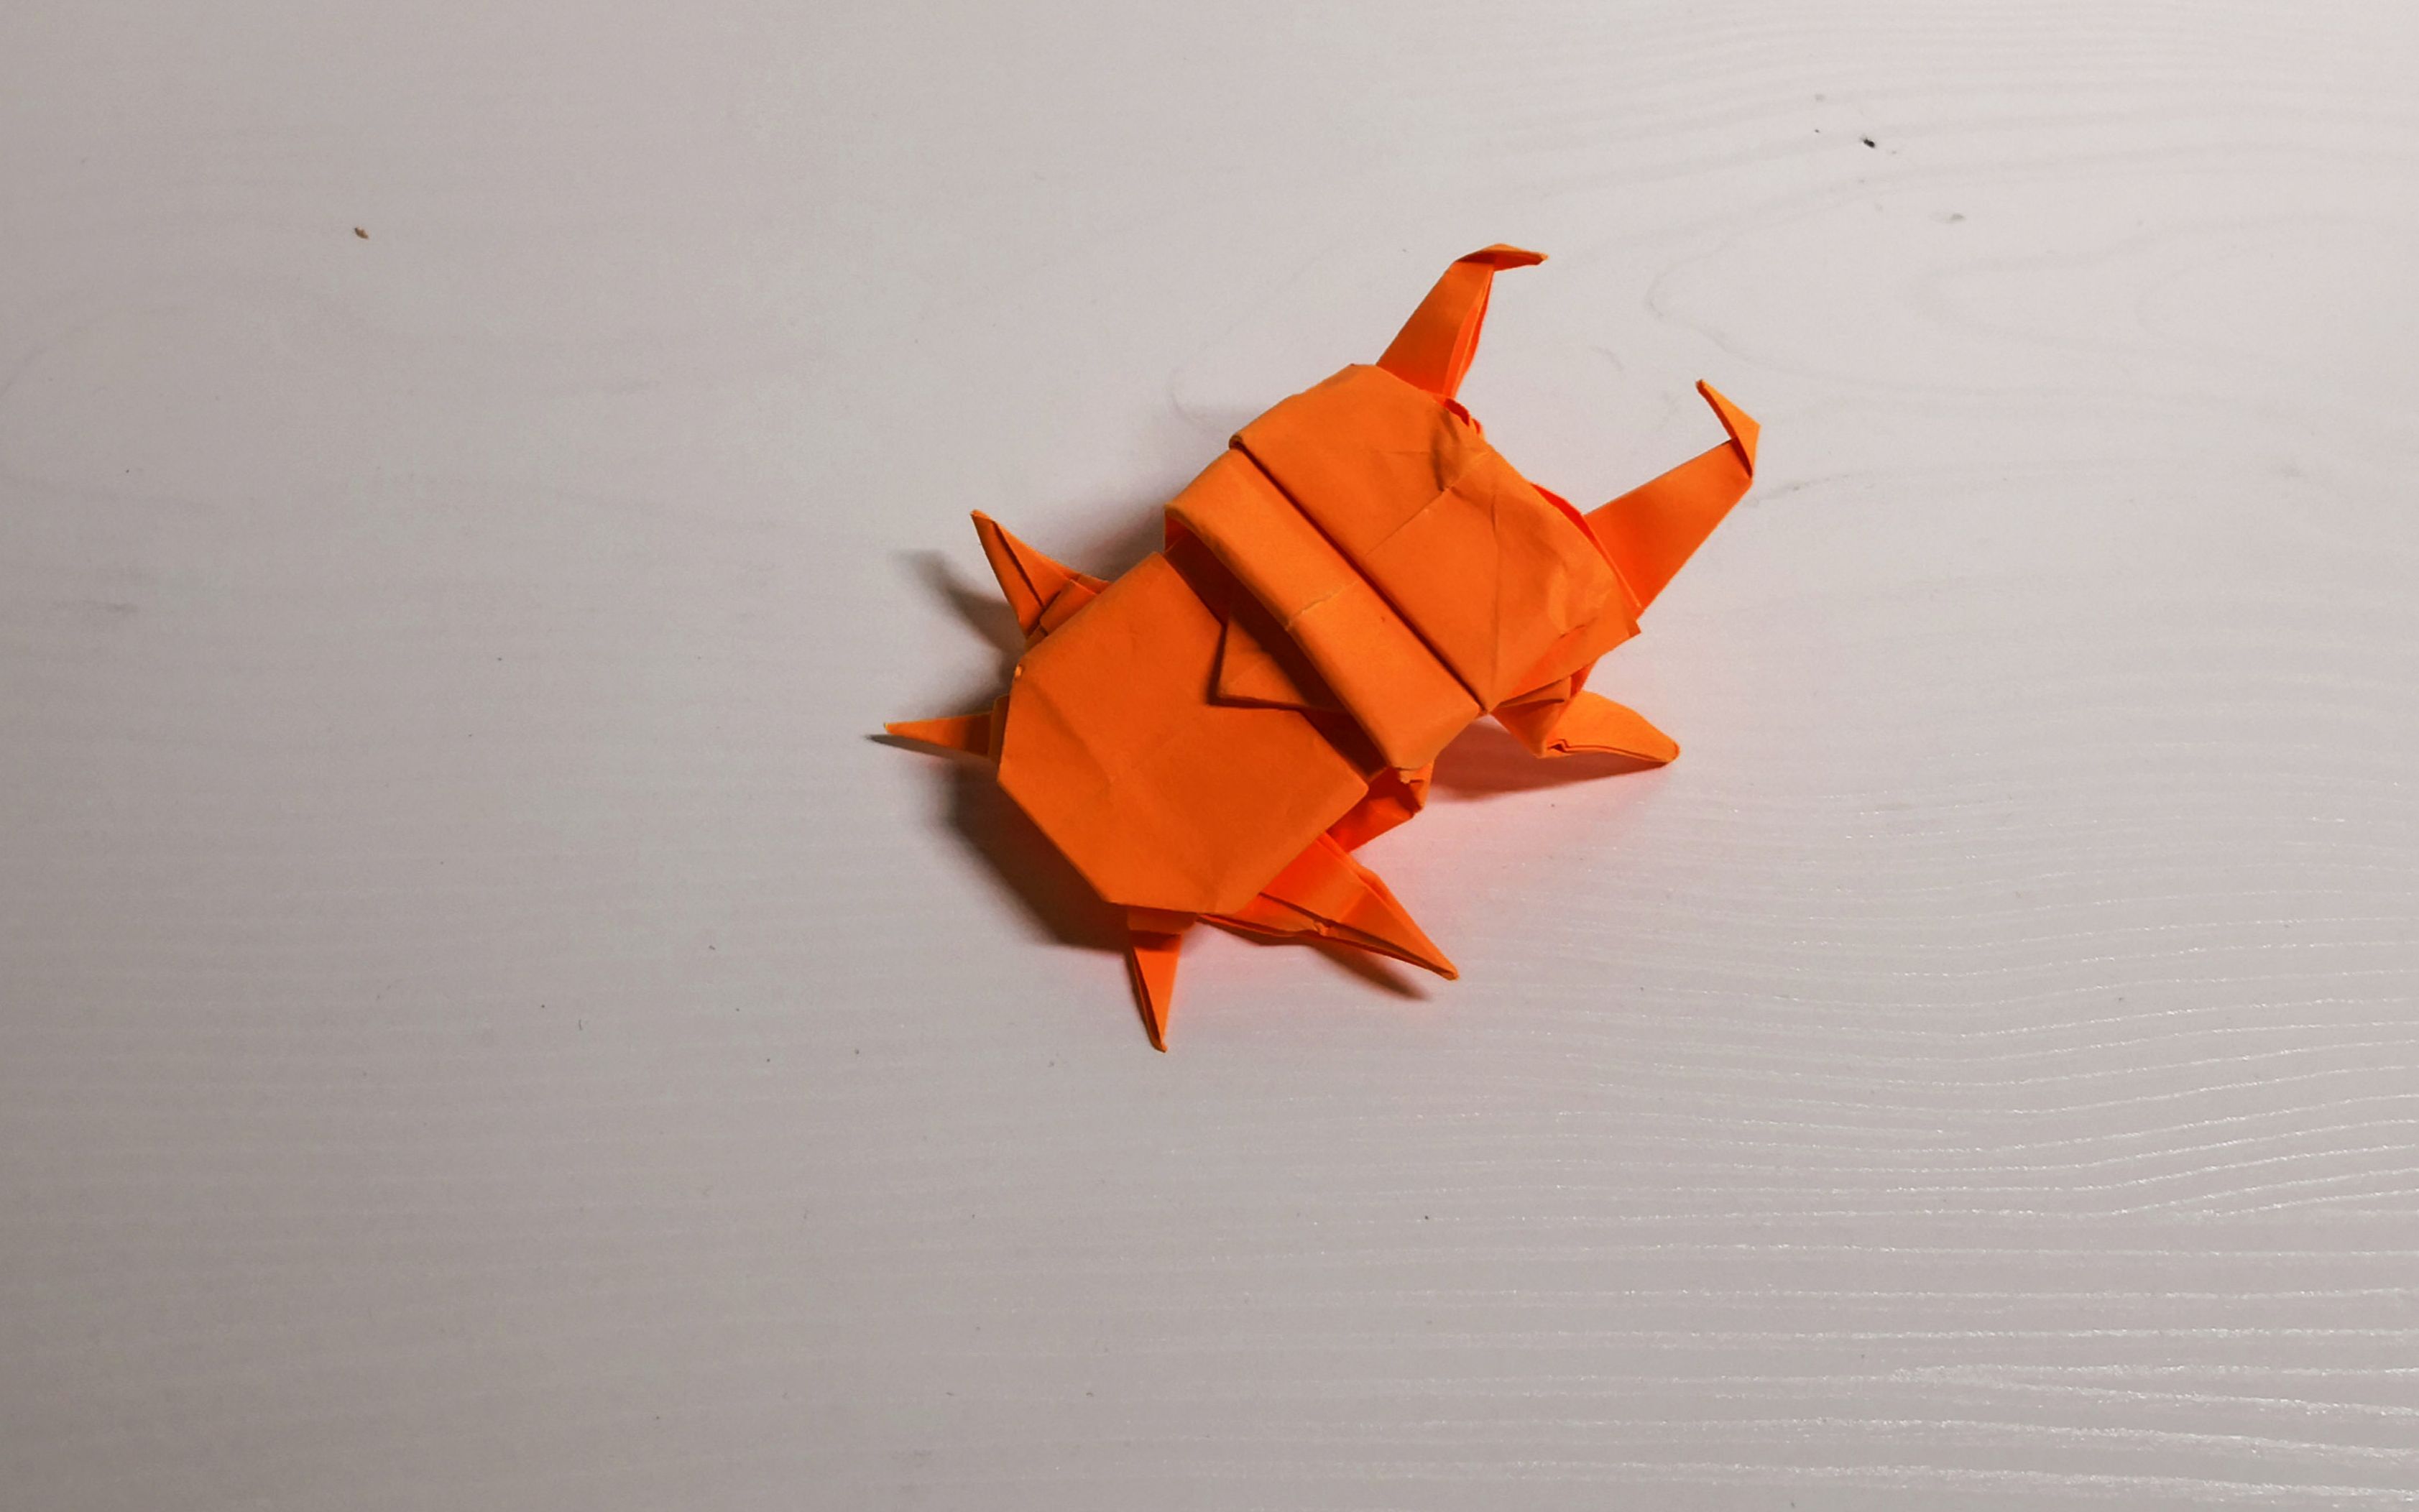 【折纸】锹形虫折纸视频教程,折法简单适合初学者练习